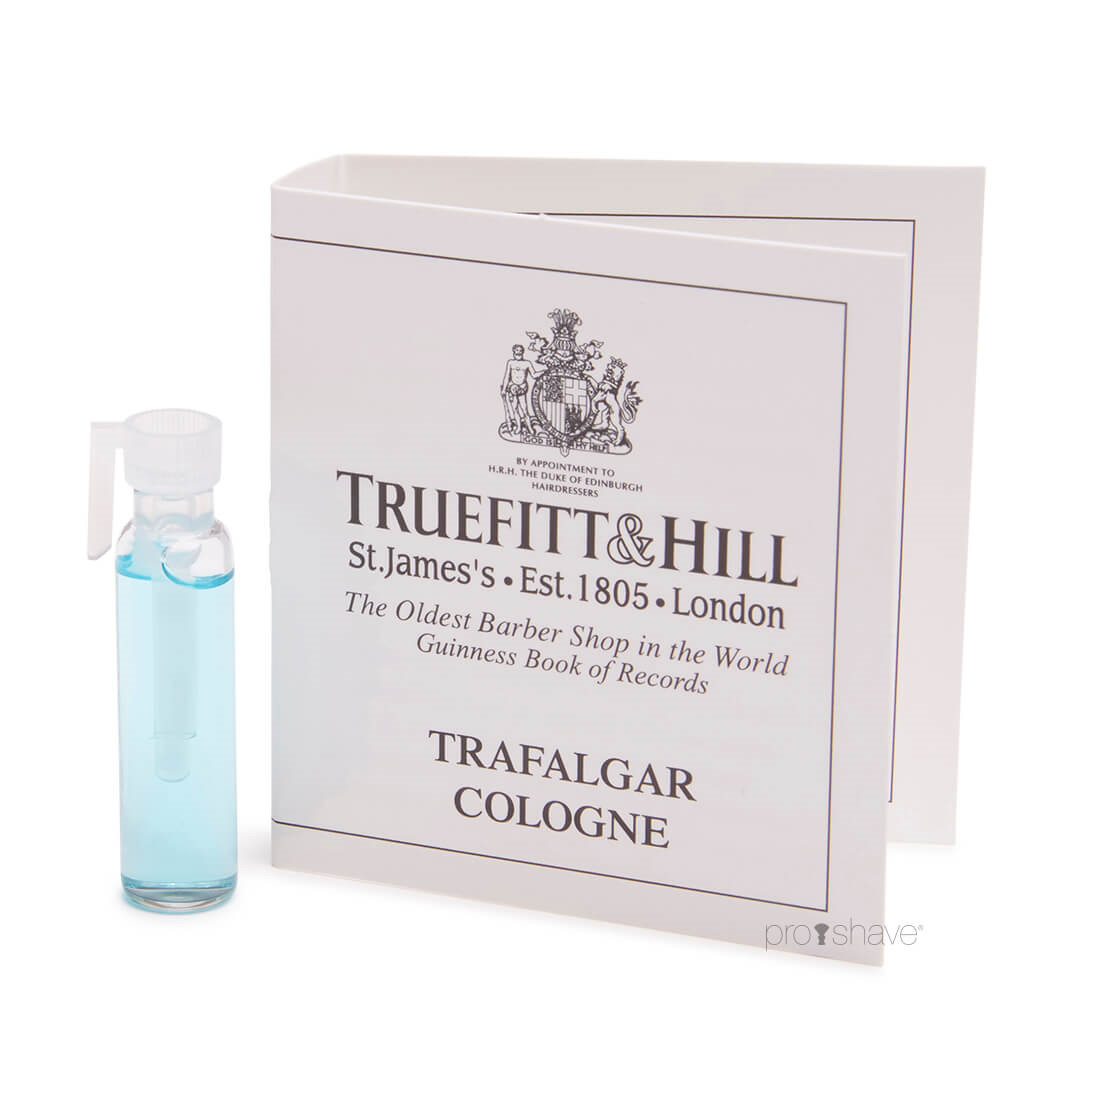 6: Truefitt & Hill Duftprøve Trafalgar